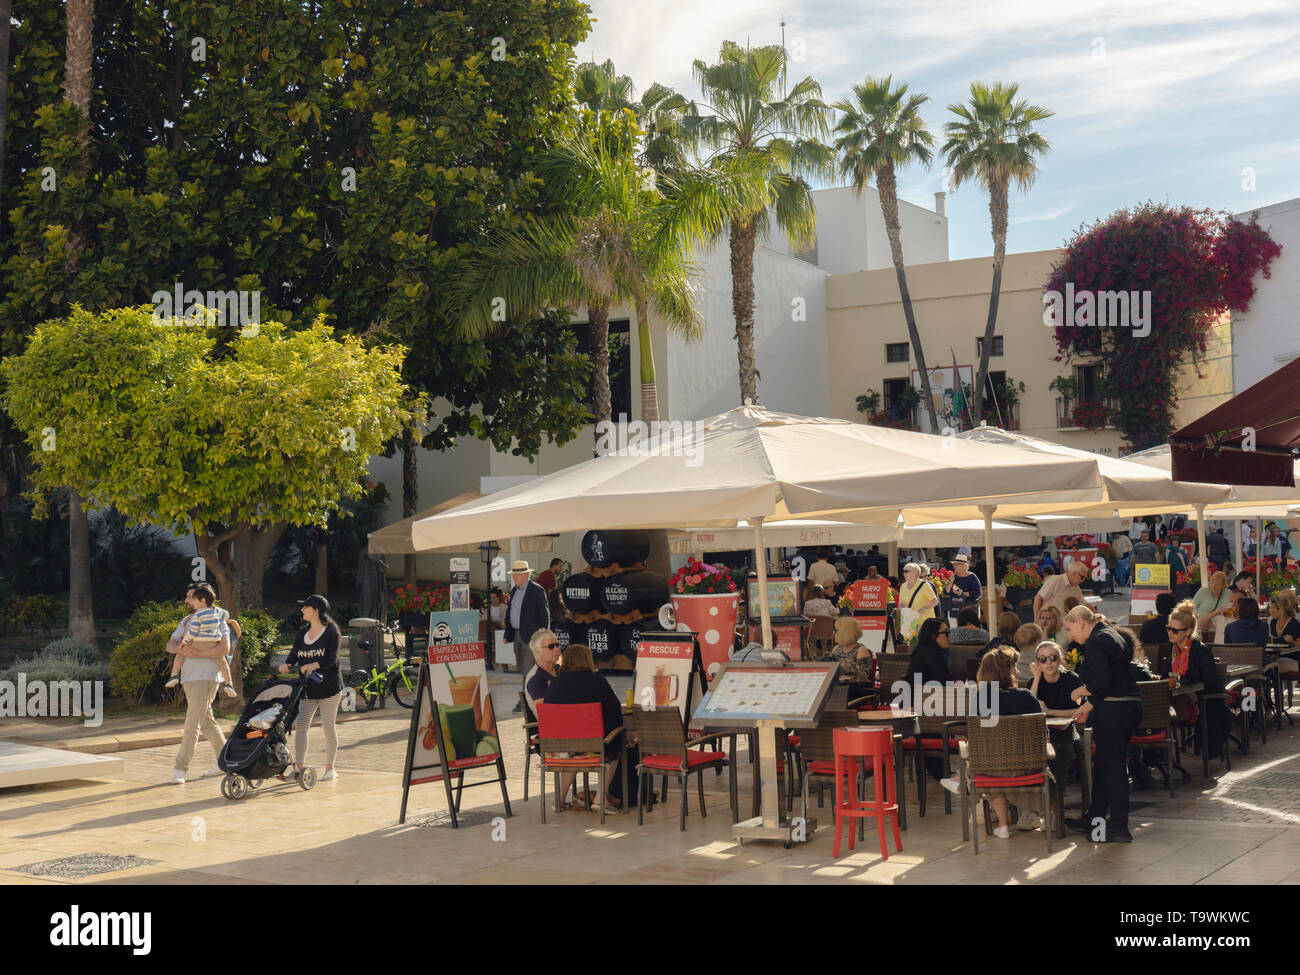 Kunden, um einen Drink zu genießen und auf der Terrasse der Bar El Pimpi auf der Ecke der Calle Zegri und Calle Alcazabilla, Malaga, Costa del Sol, Provinz Malaga, Andal Stockfoto